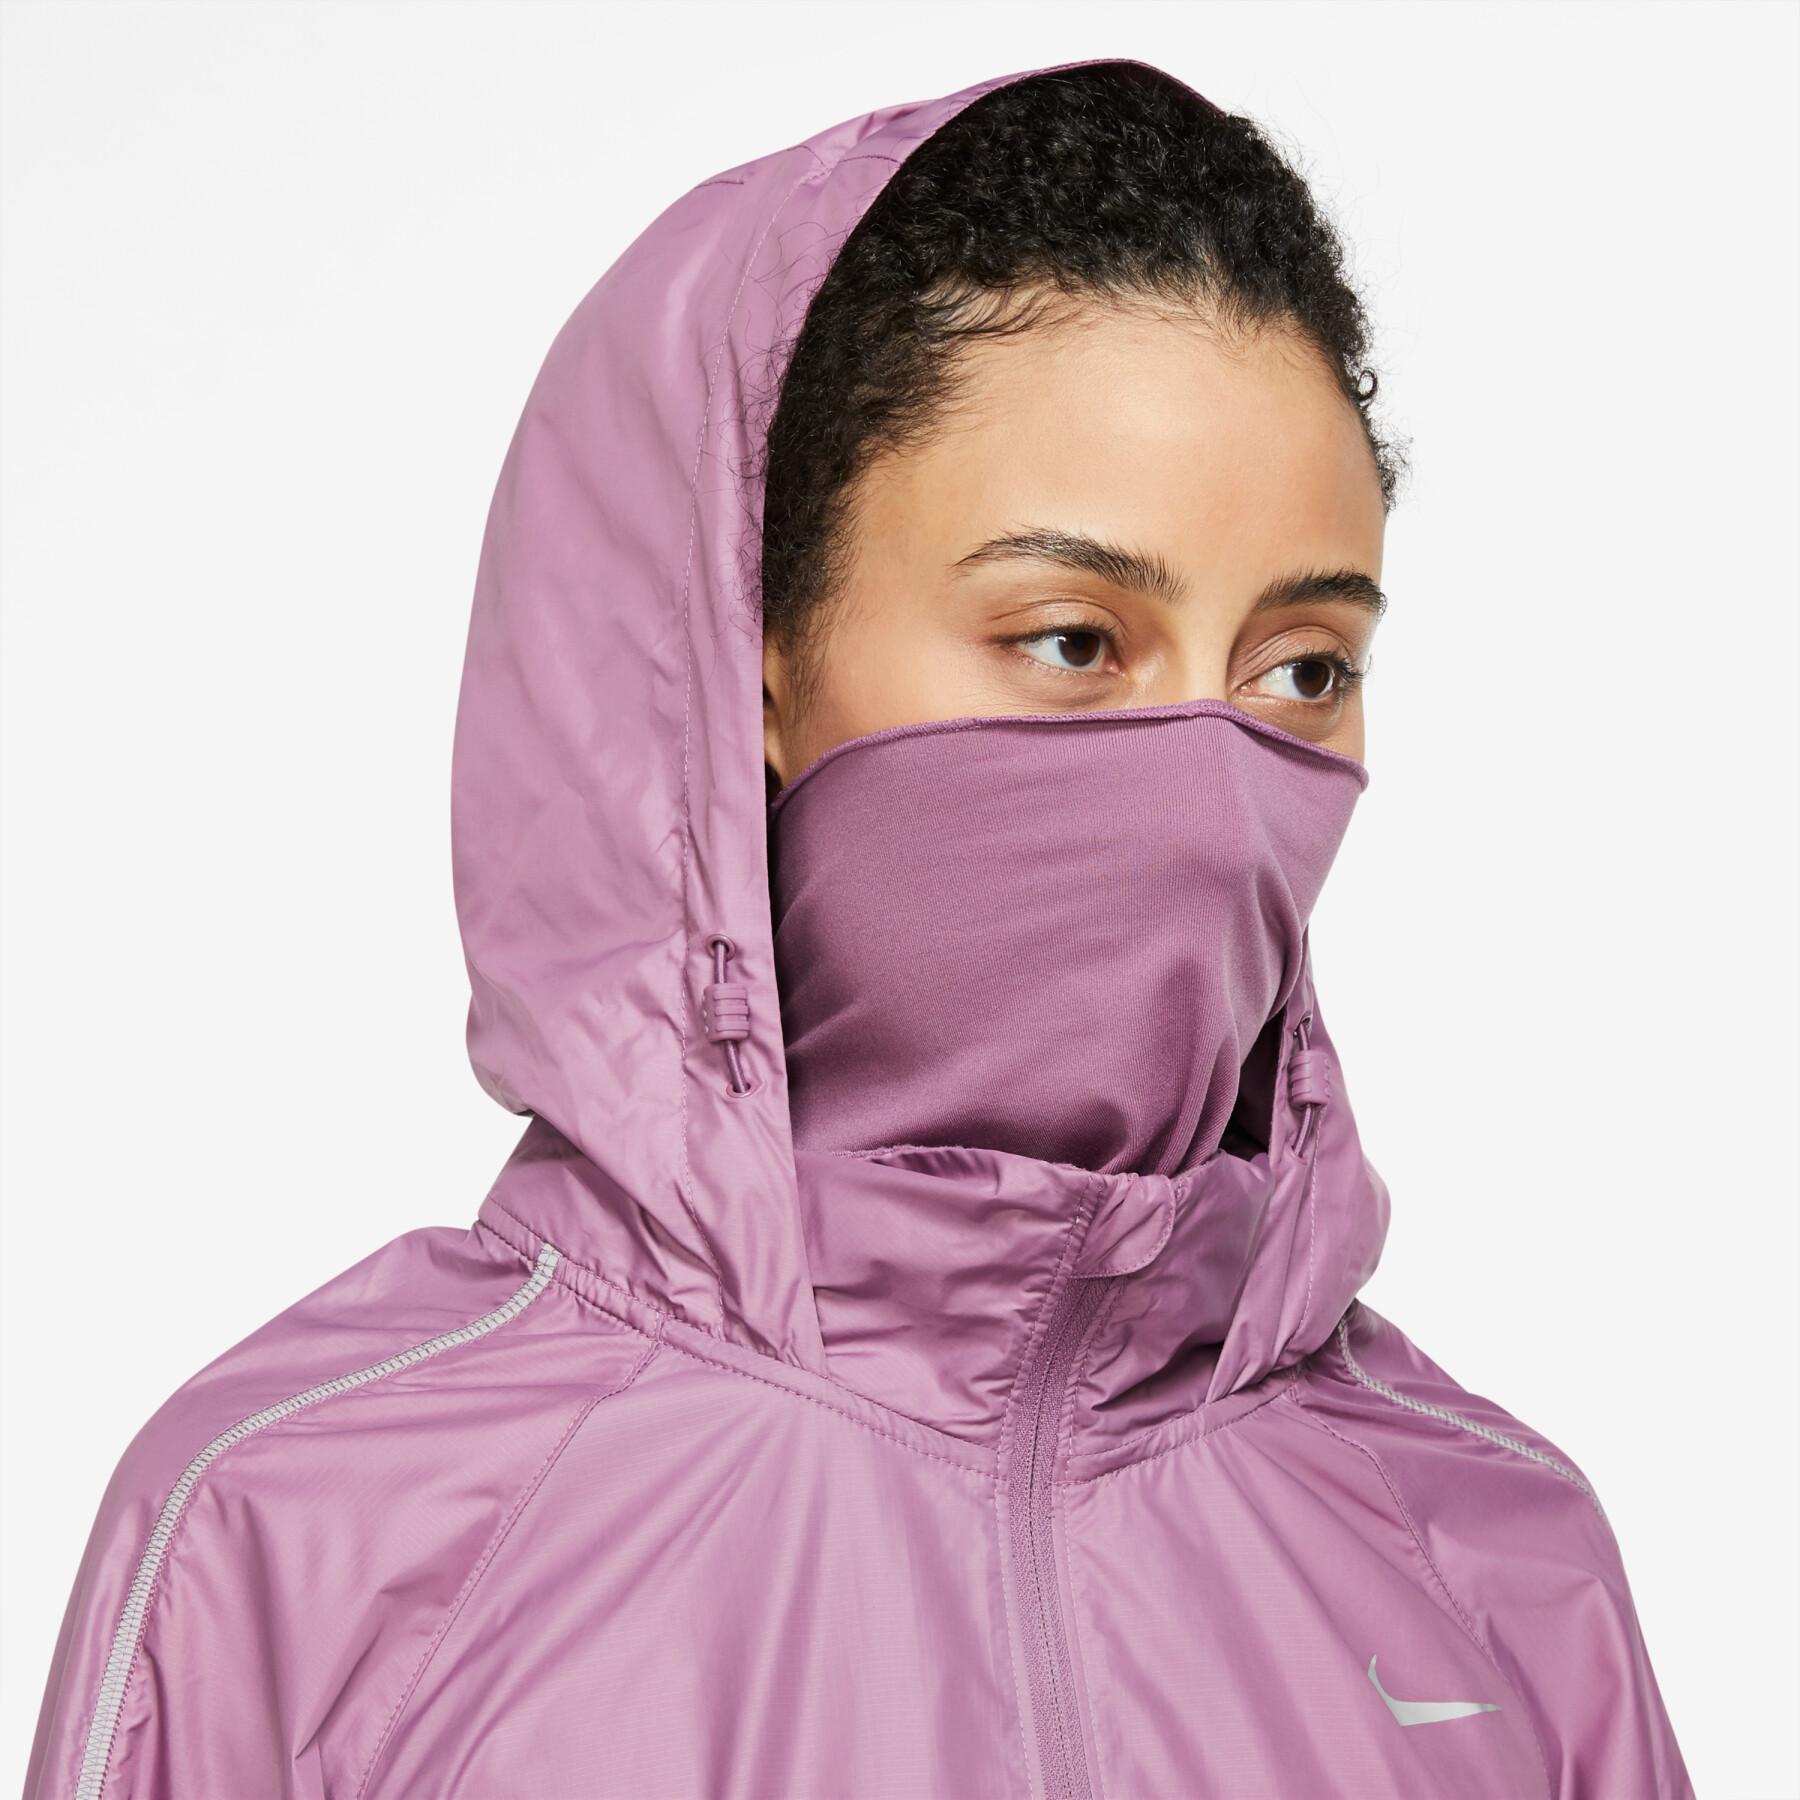 Women's sweat jacket Nike Shield